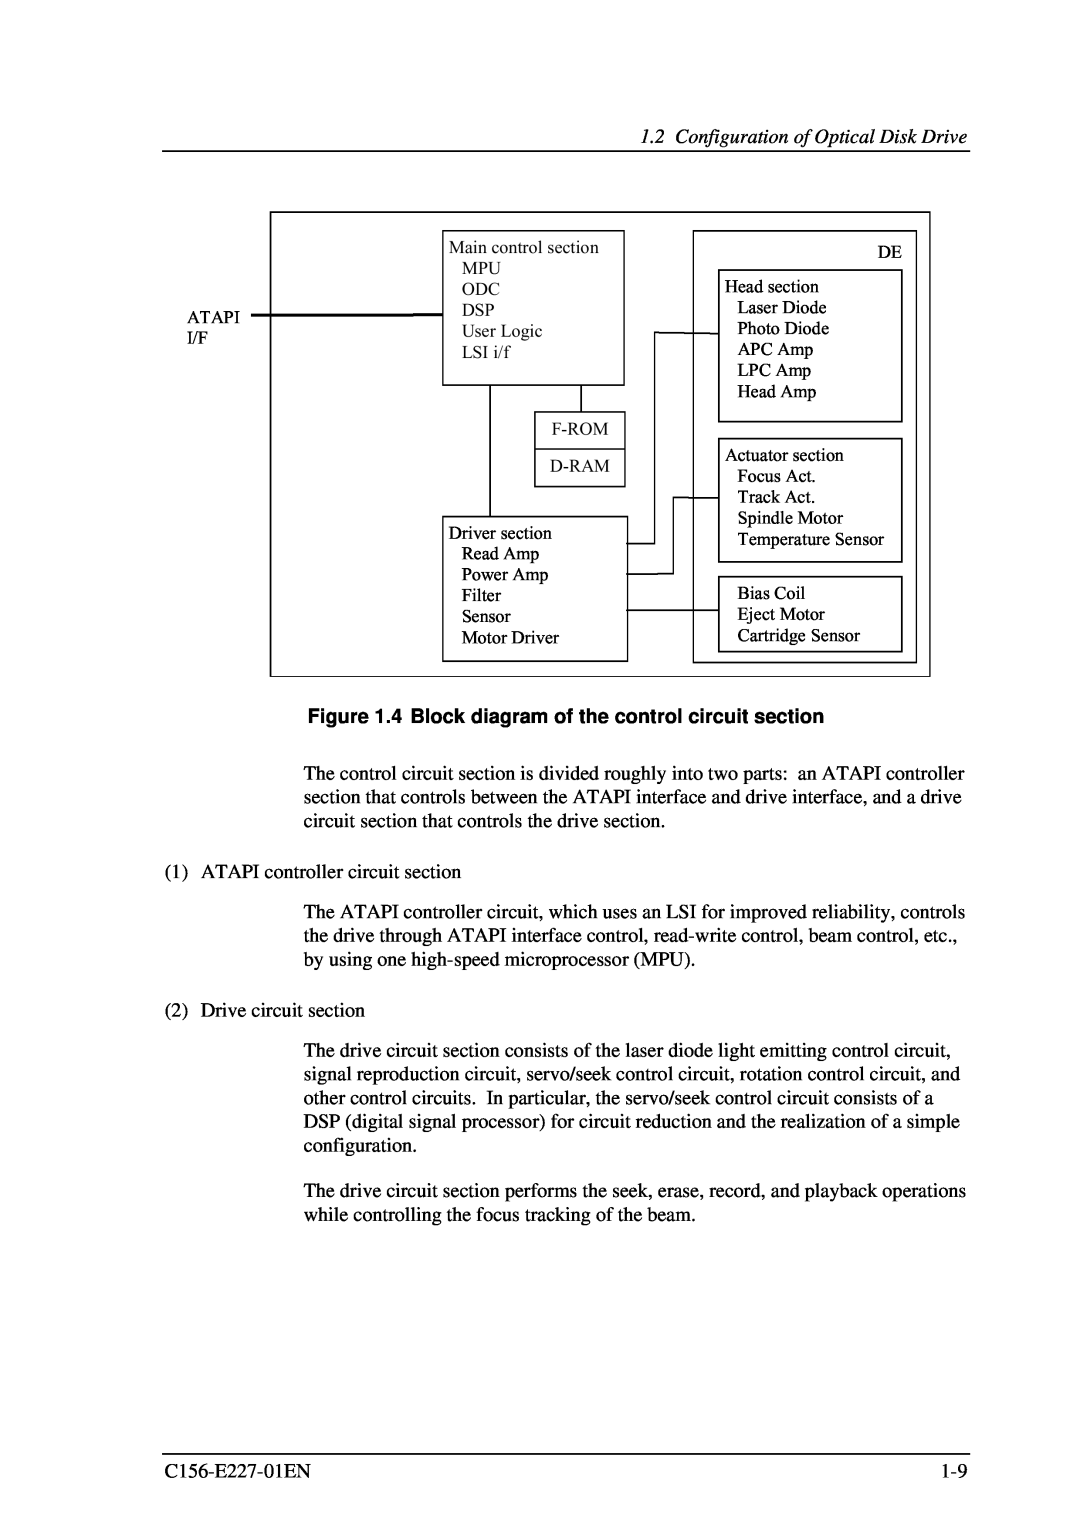 Fujitsu MCM3130AP, MCM3064AP manual 4 Block diagram of the control circuit section, Configuration of Optical Disk Drive 